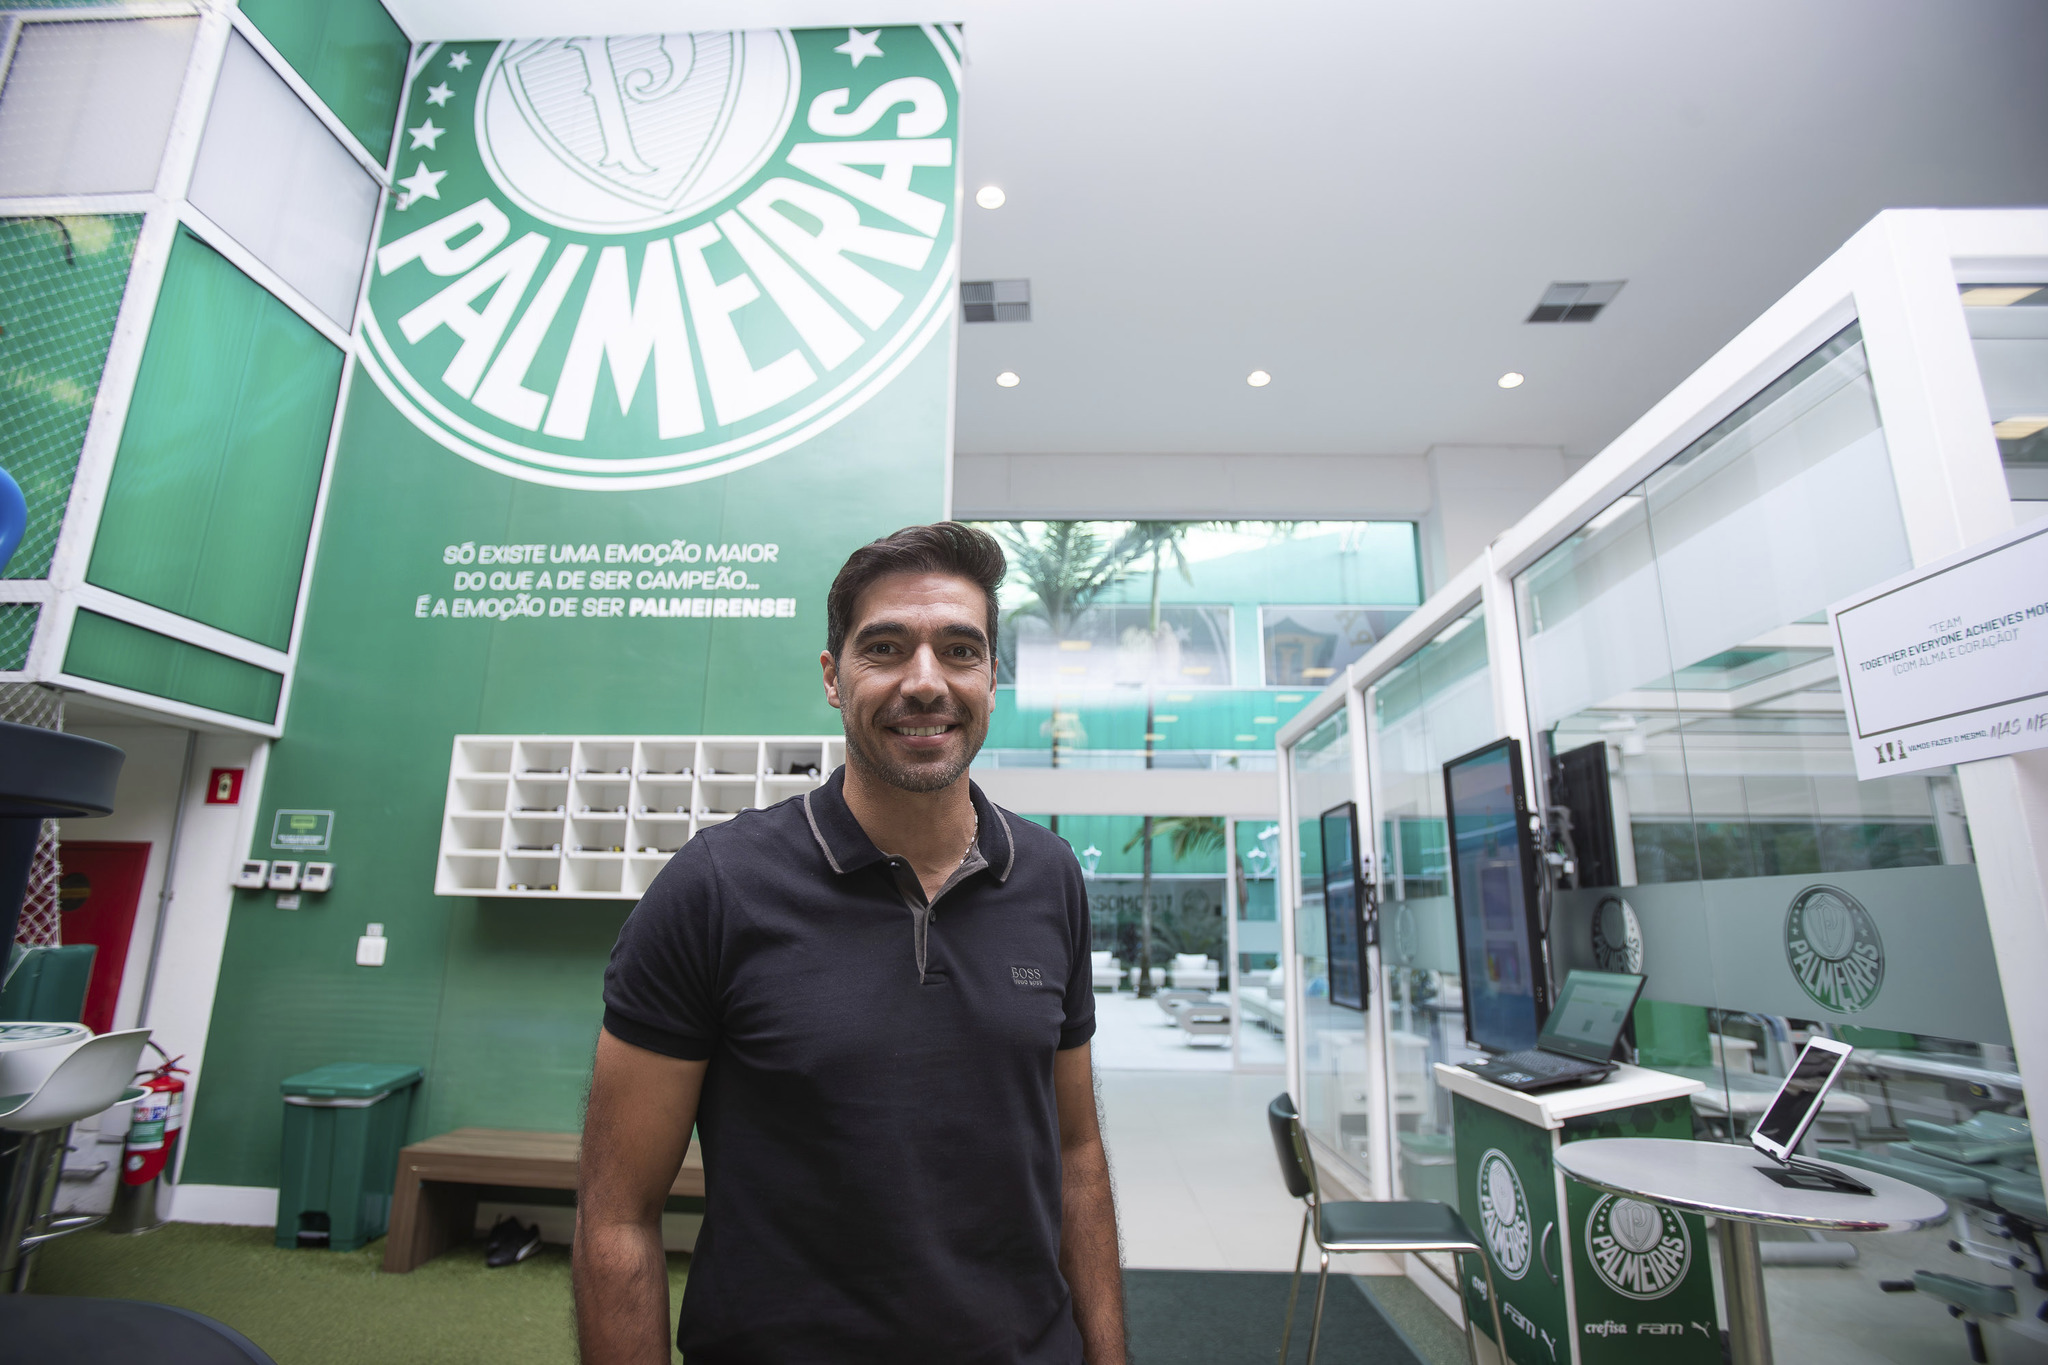 Abel Ferreira, entrenador de Palmeiras: "Más que de jugar, se trata de prepararse para jugar"